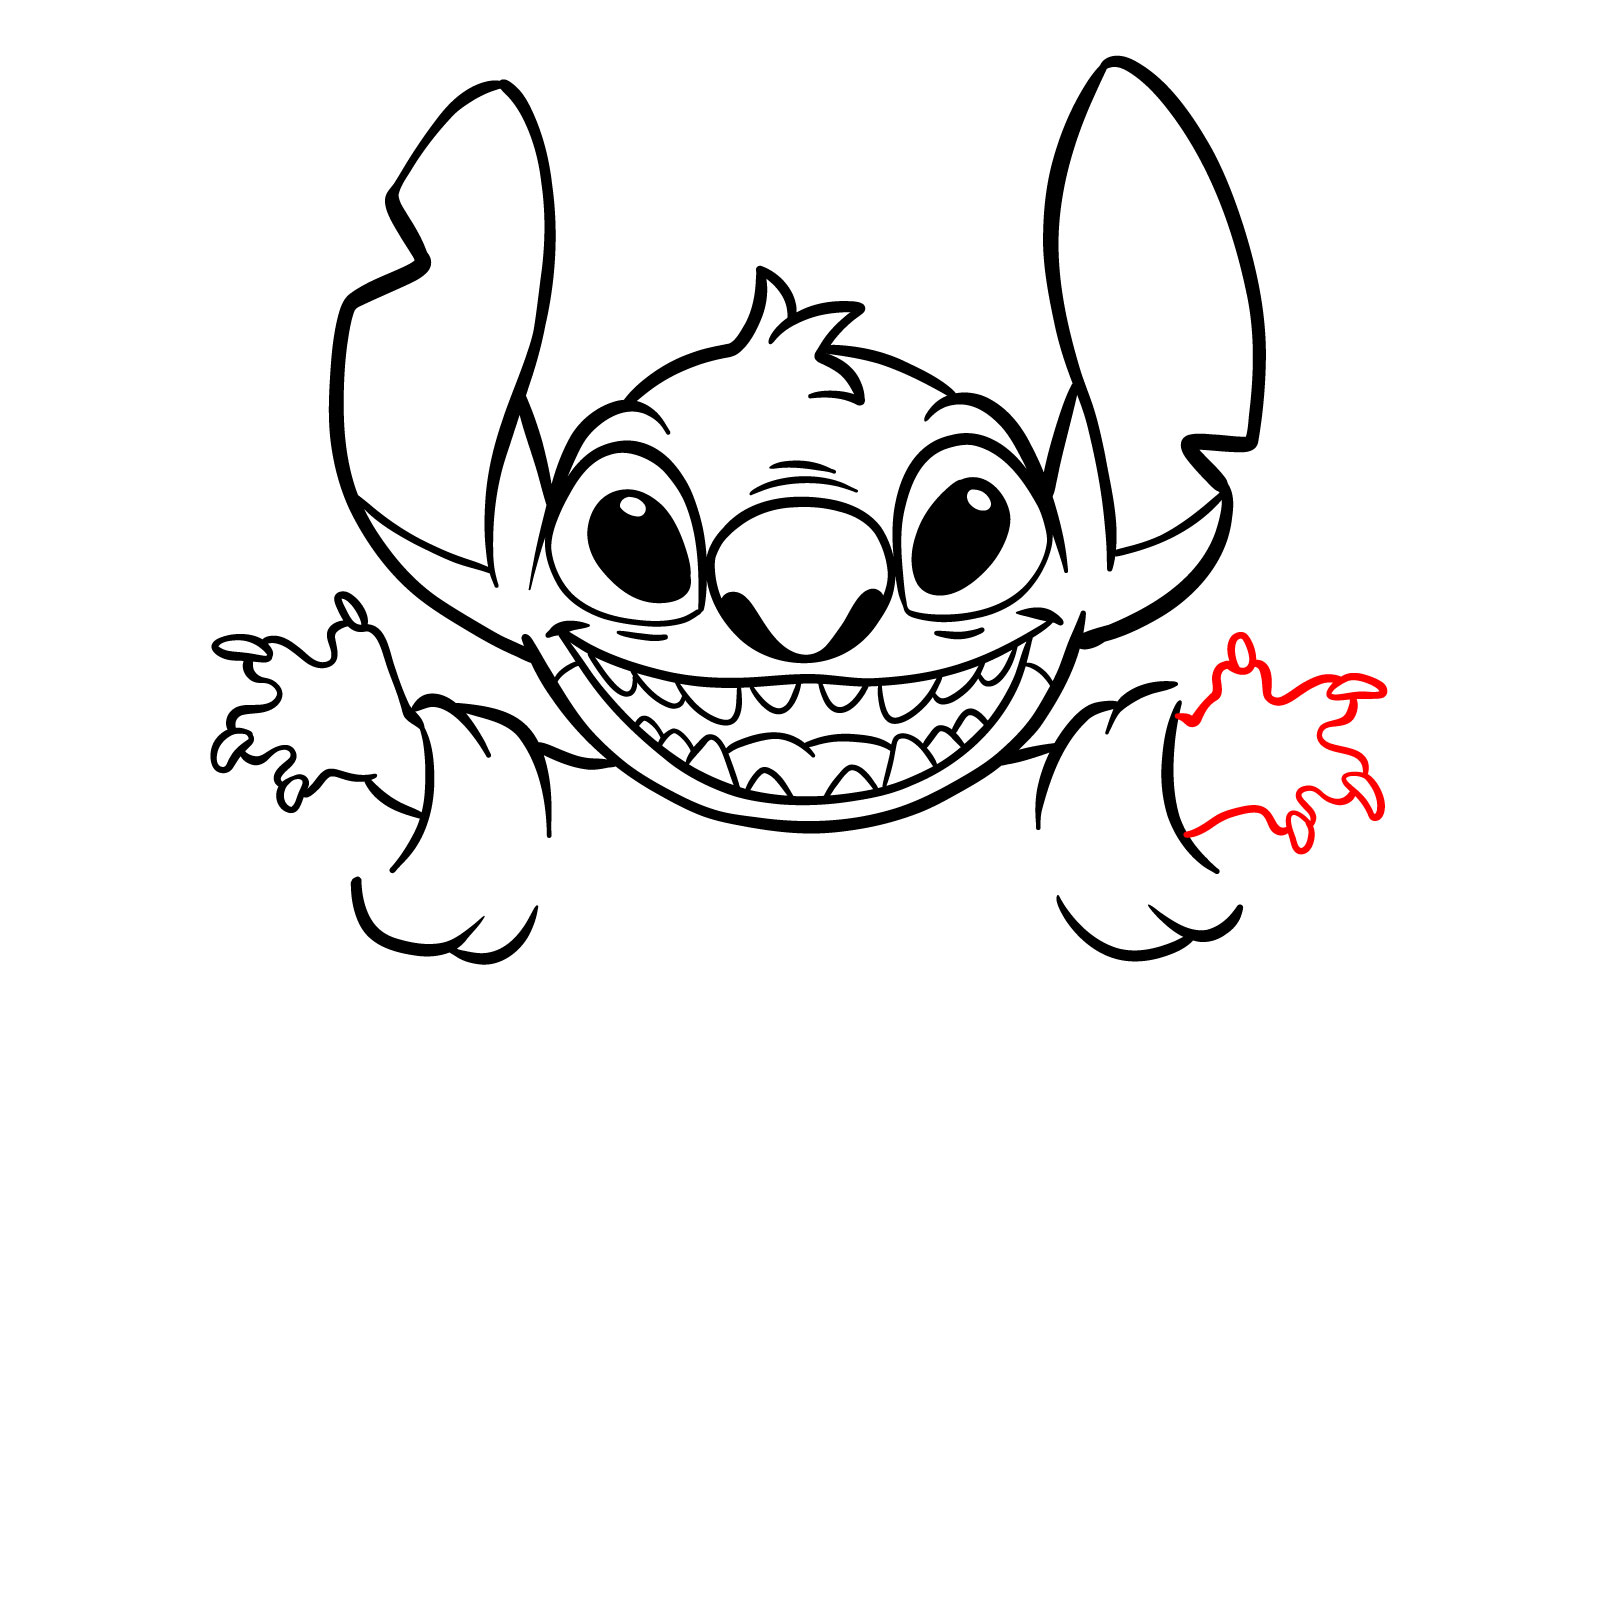 How to Draw Halloween Stitch with a jack-o'-lantern - step 18